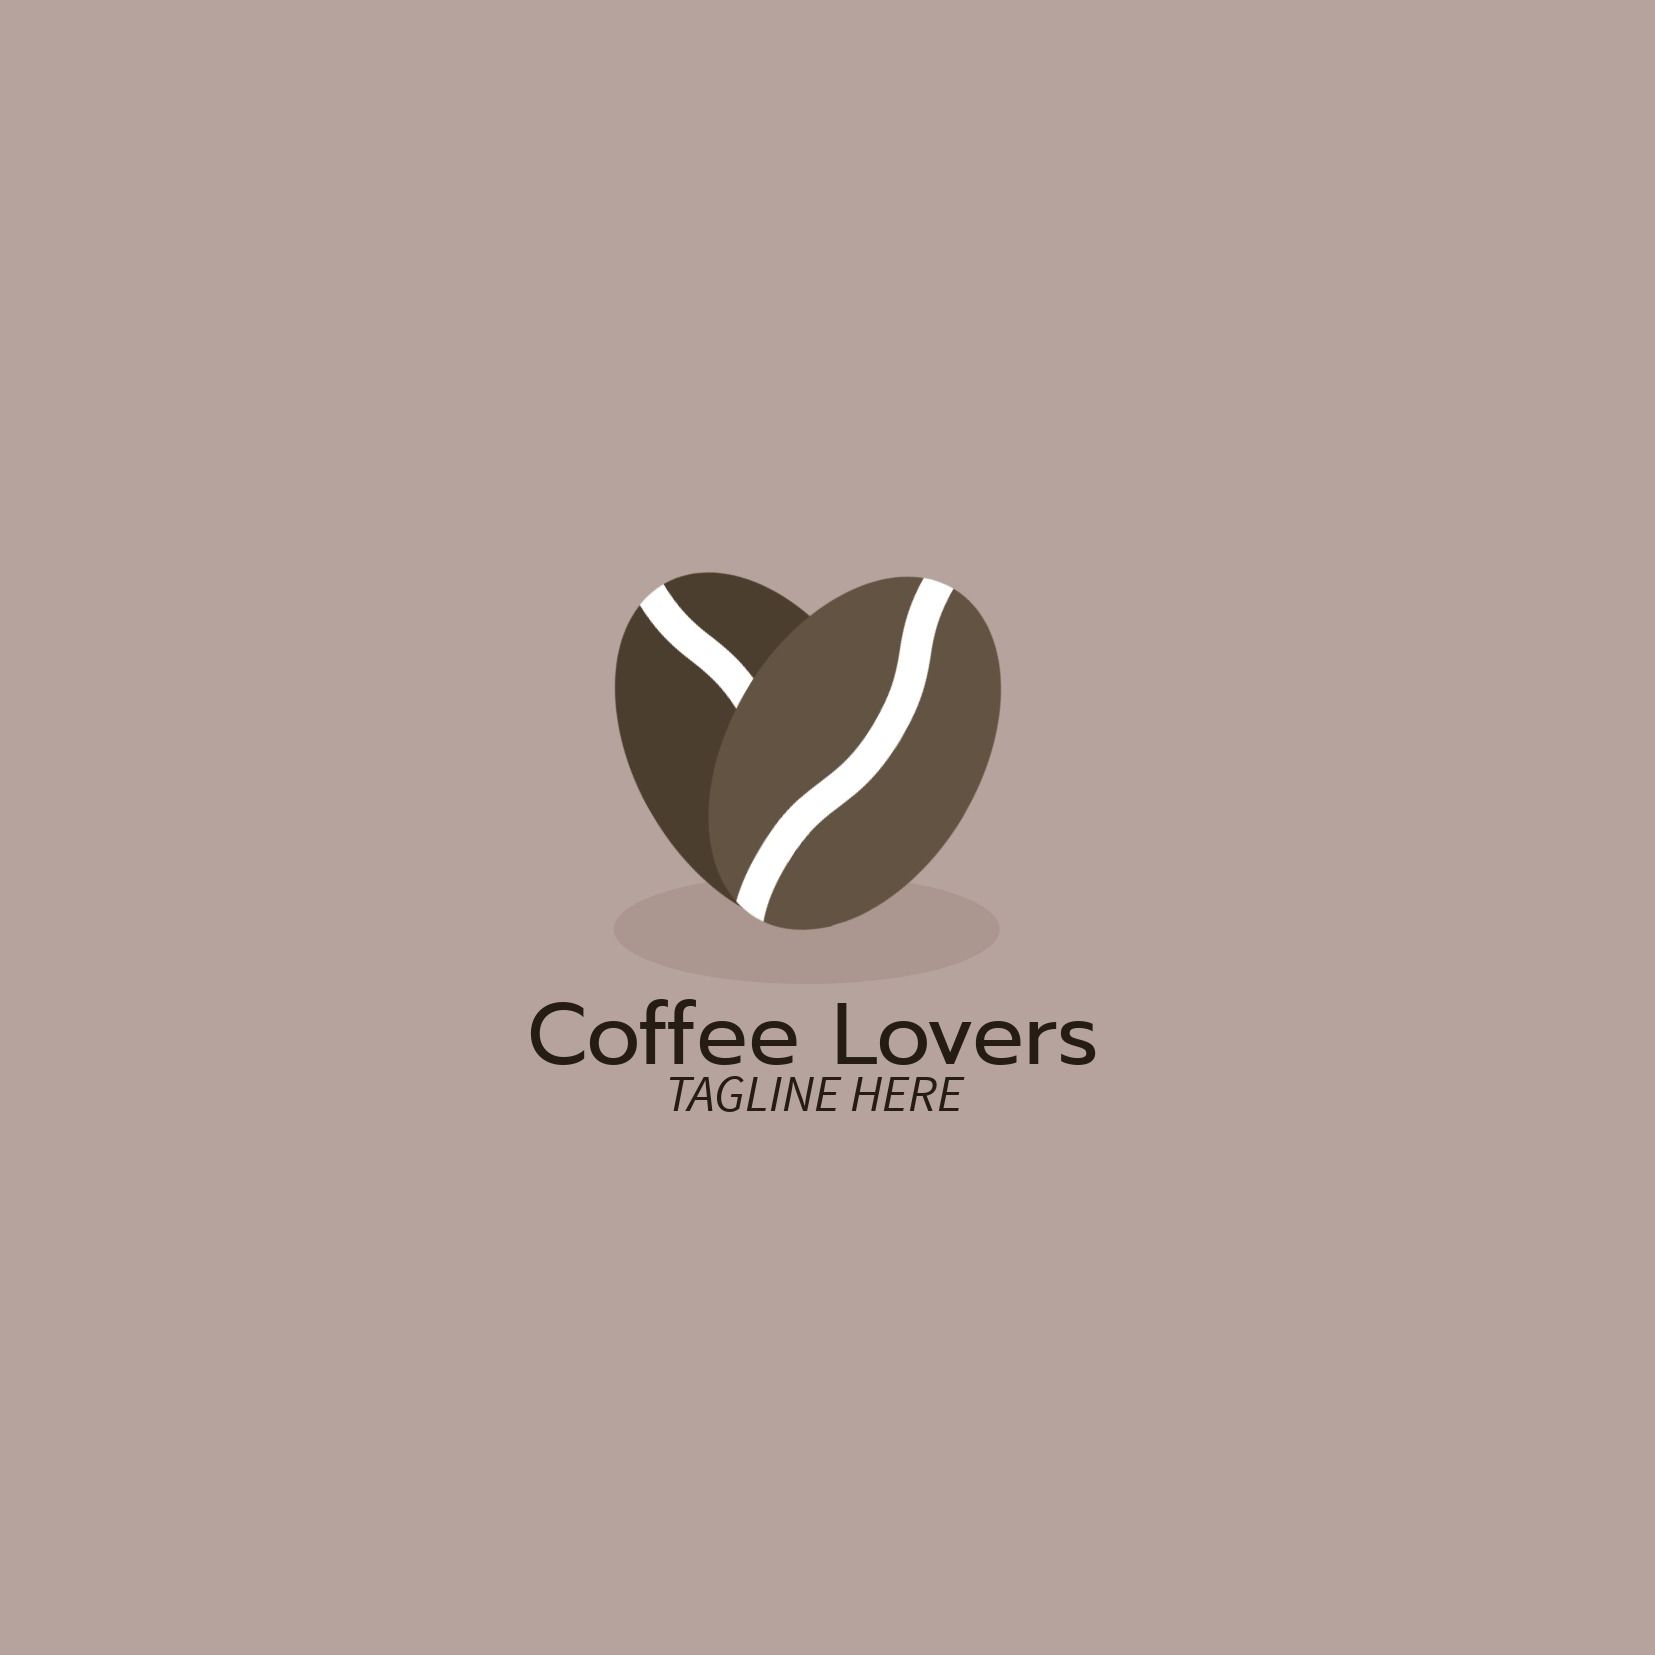 Logo Coffee Lovers avec grains de café - Avantages de la police Prompt - Image